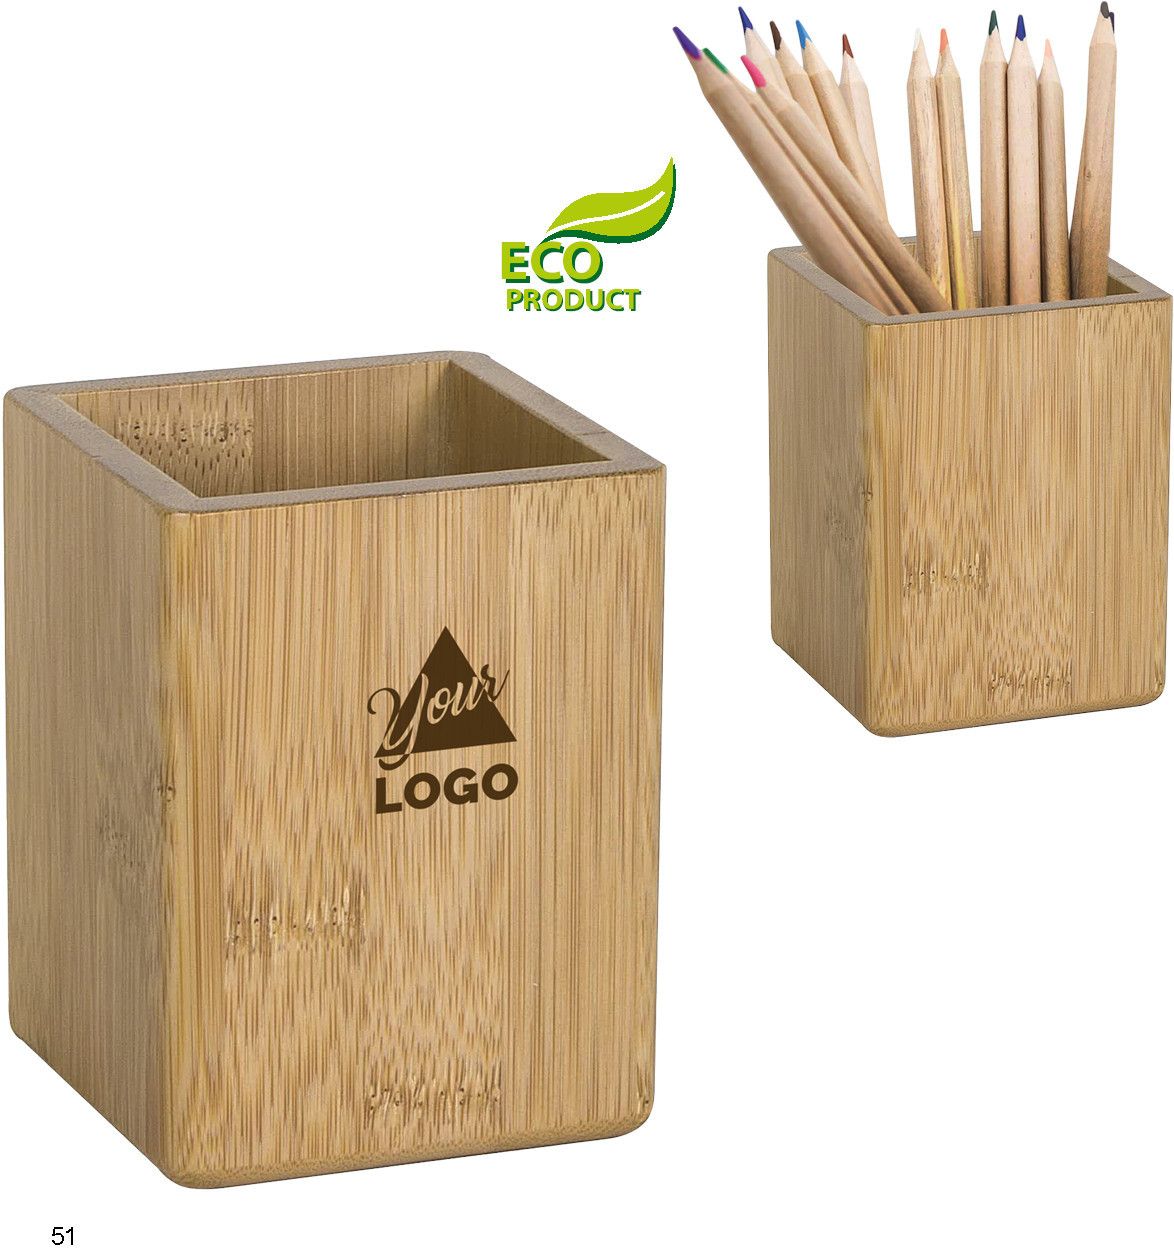 Bambusový stojánek na propisky, eco friendly J14.4040 J14.4040.53